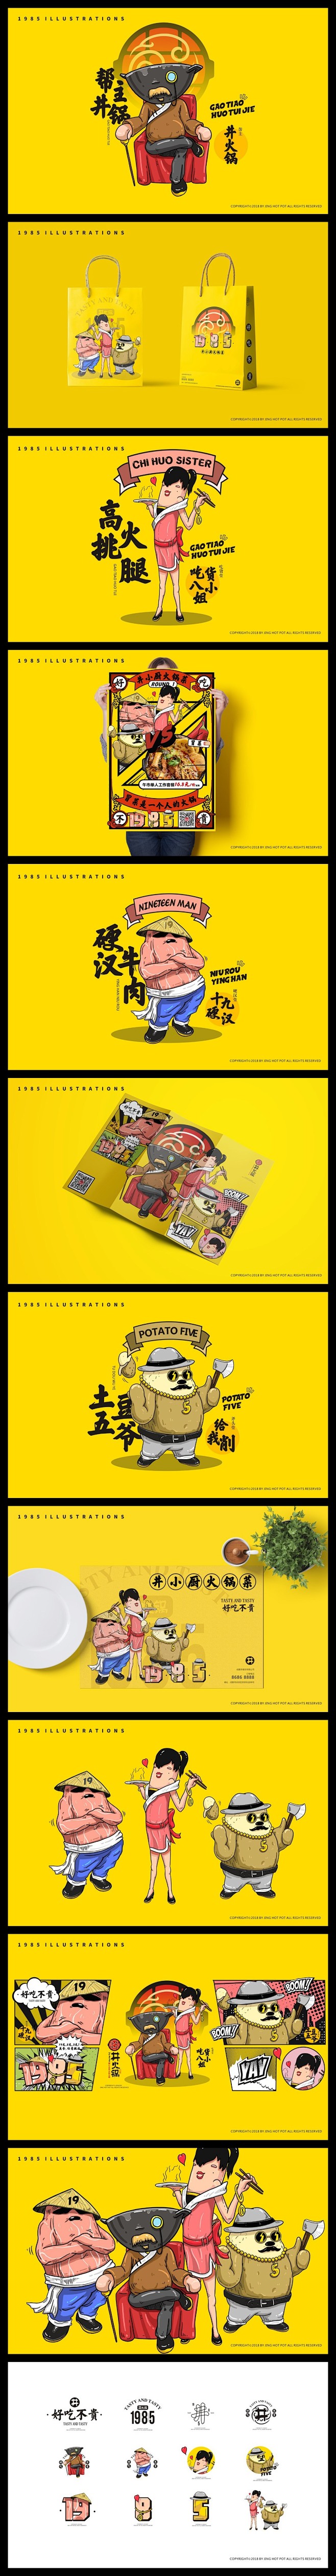 火锅品牌VI设计 手绘 卡通形象